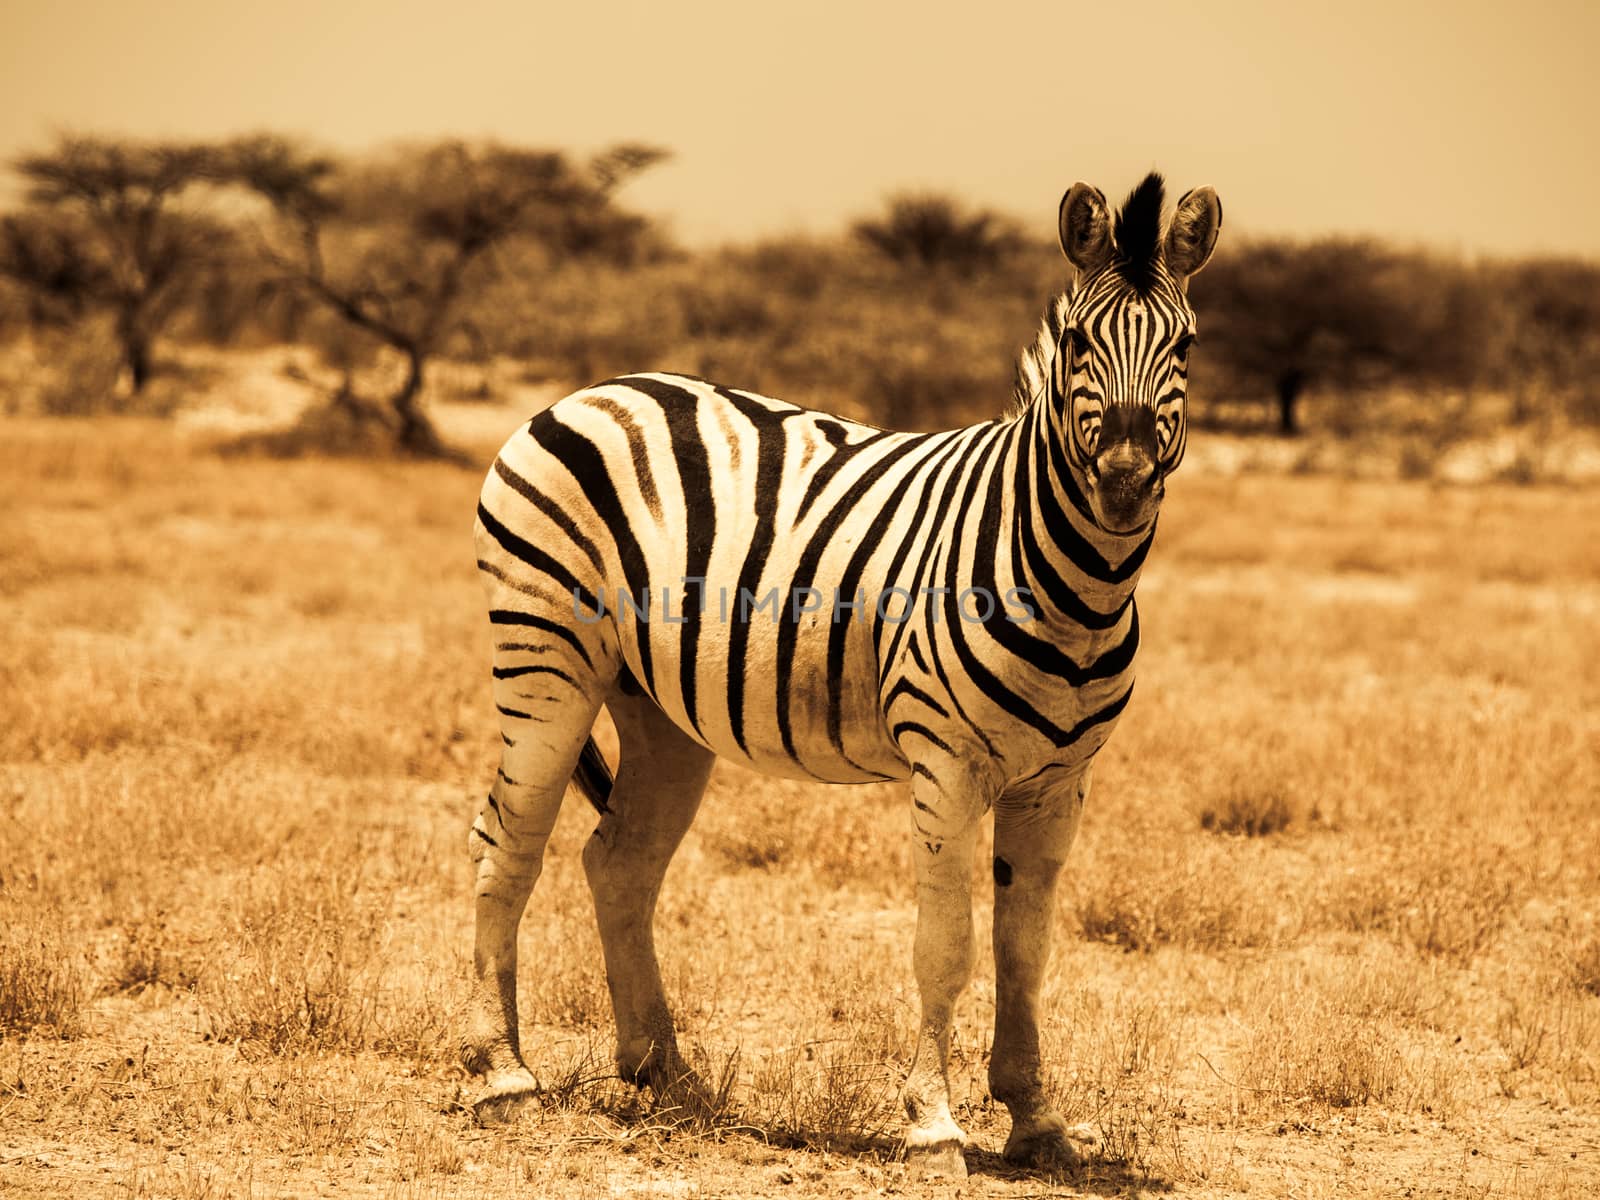 Zebra in warm colors (Etosha National Park, Namibia)